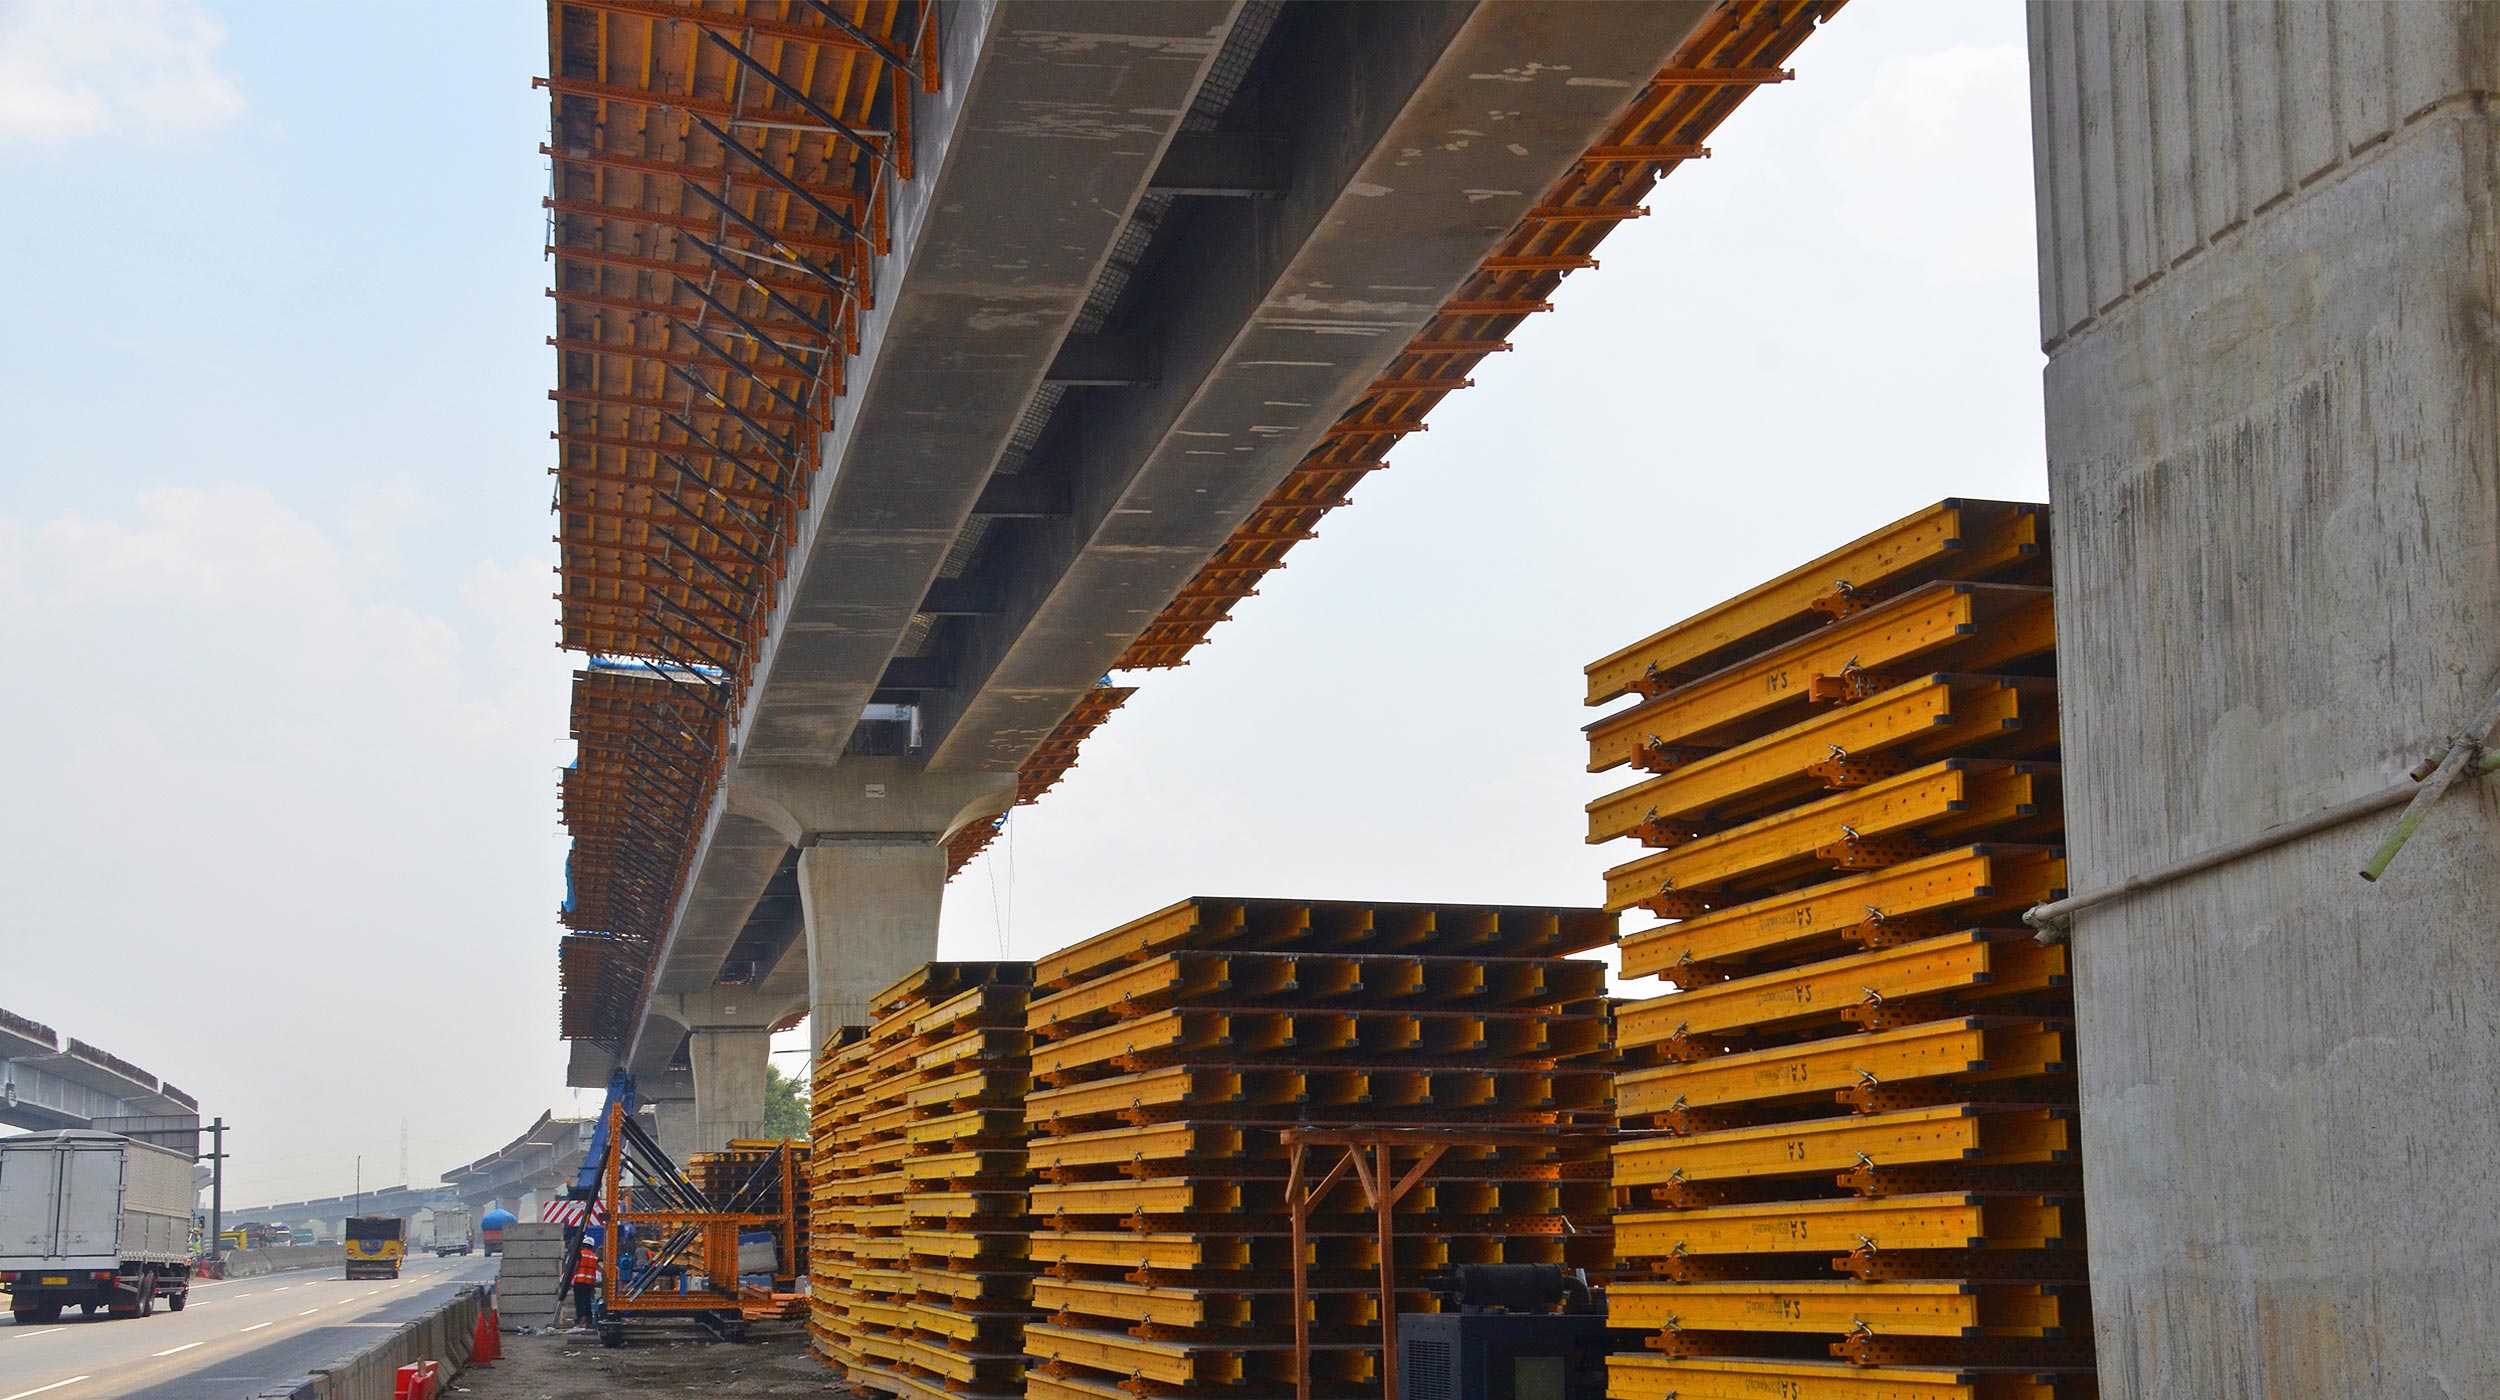 Construção da nova rodovia elevada com pedágio de Yacarta-Cikampek, um distrito industrial em Karawang, Java Ocidental.